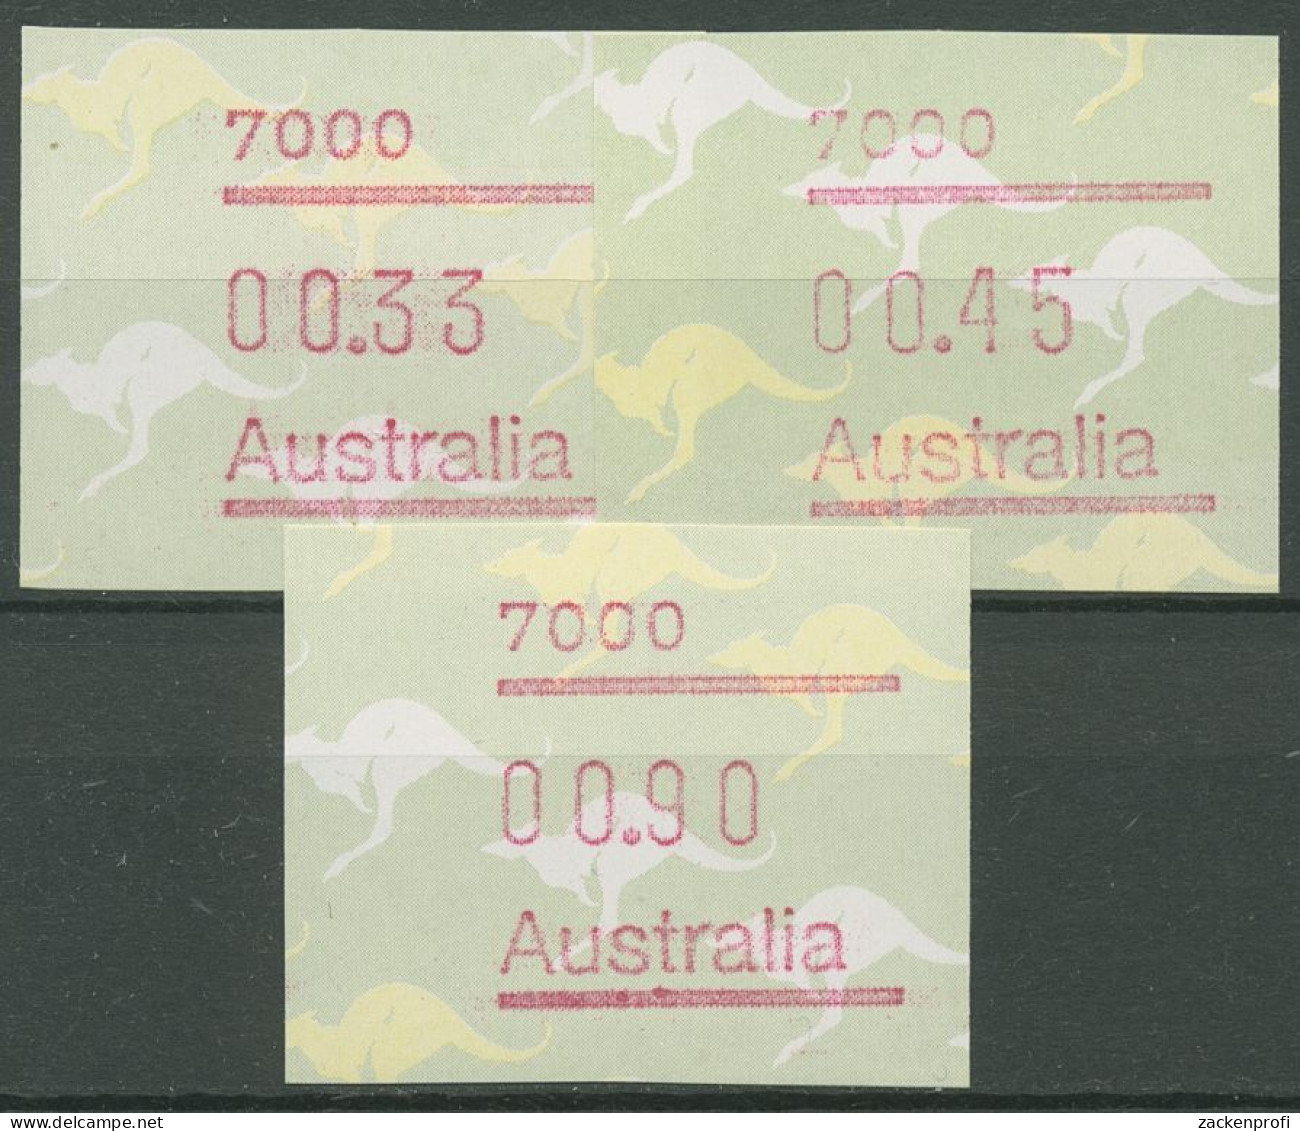 Australien 1985 Känguruh Tastensatz Automatenmarke 4 S1, 7000 Postfrisch - Machine Labels [ATM]